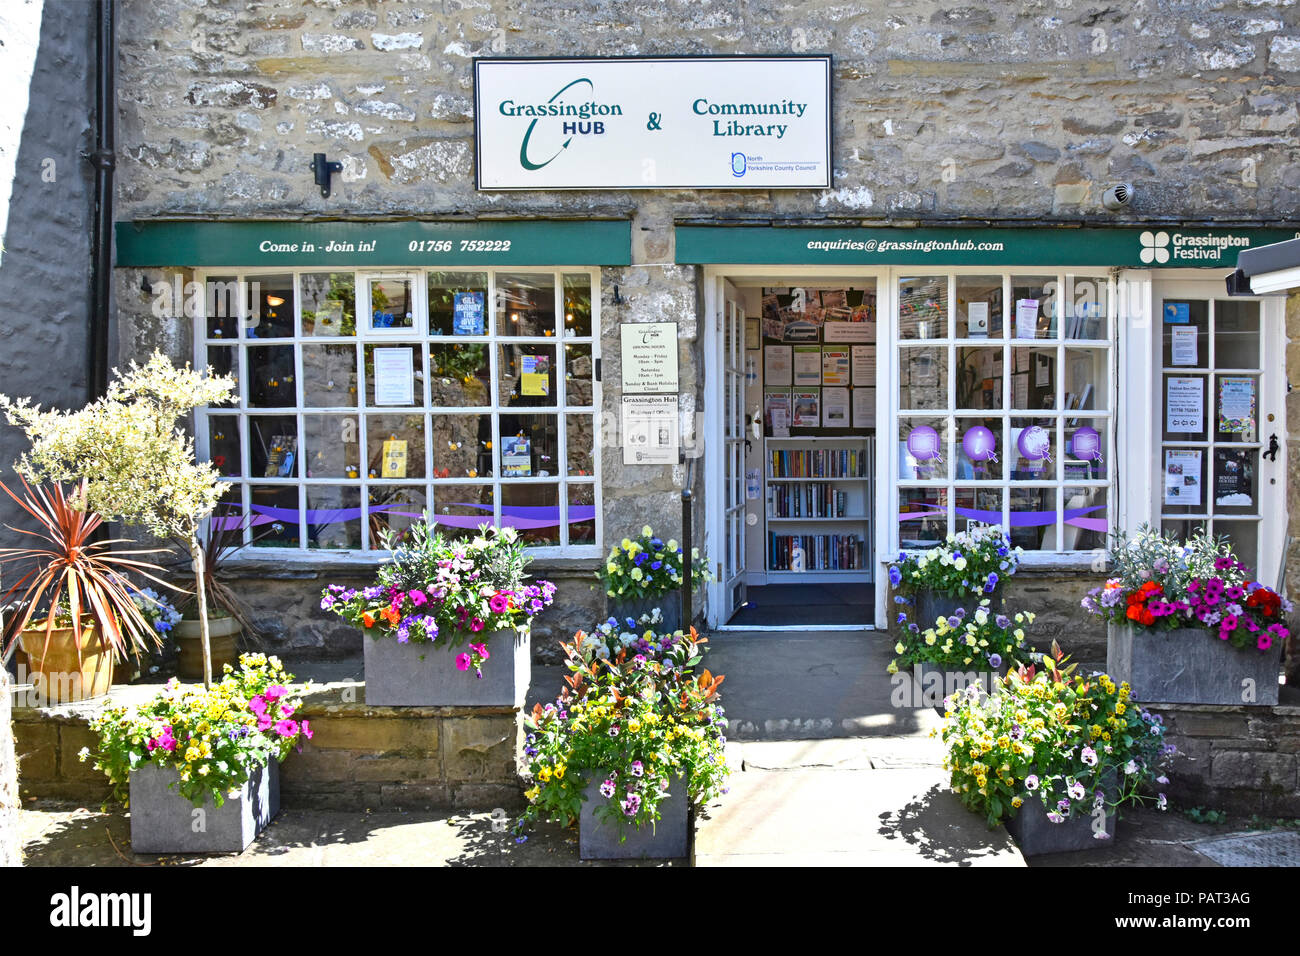 Projet de bibliothèque communautaire moyeu malham service géré par des bénévoles principalement aide boutique de fleurs & avant Wharfedale North Yorkshire Dales UK Banque D'Images